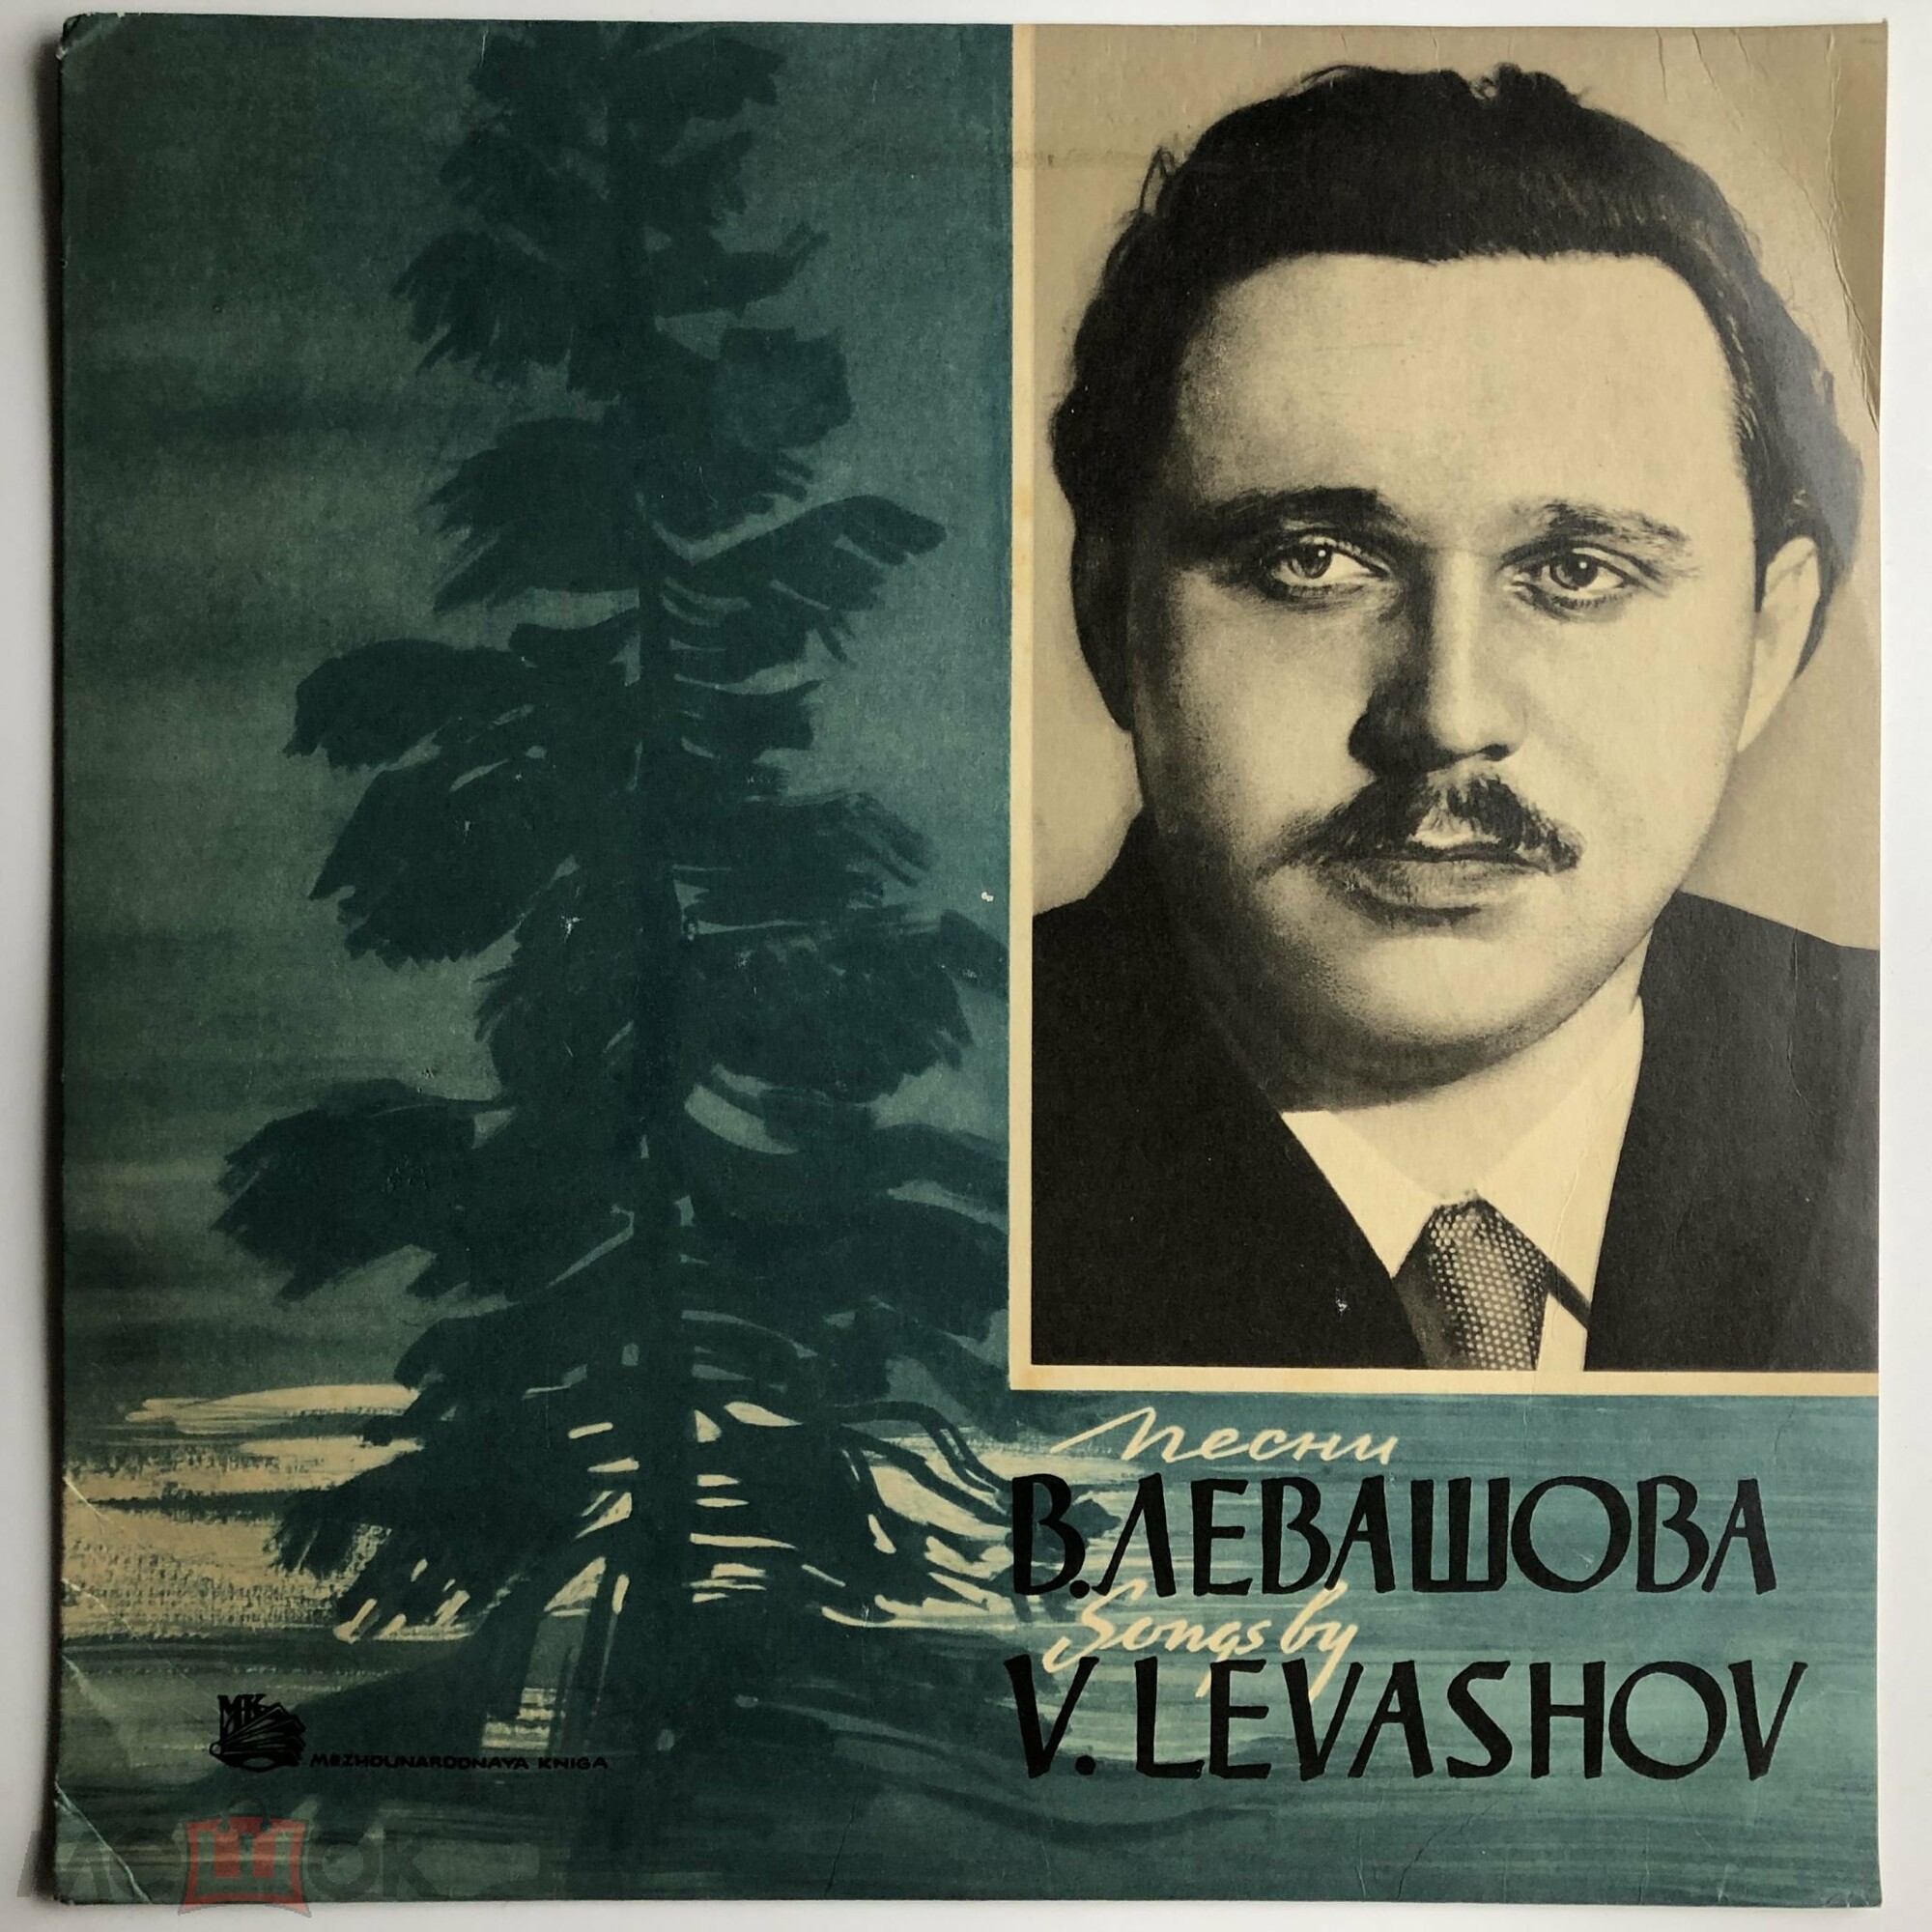 Песни В. ЛЕВАШОВА (1915)